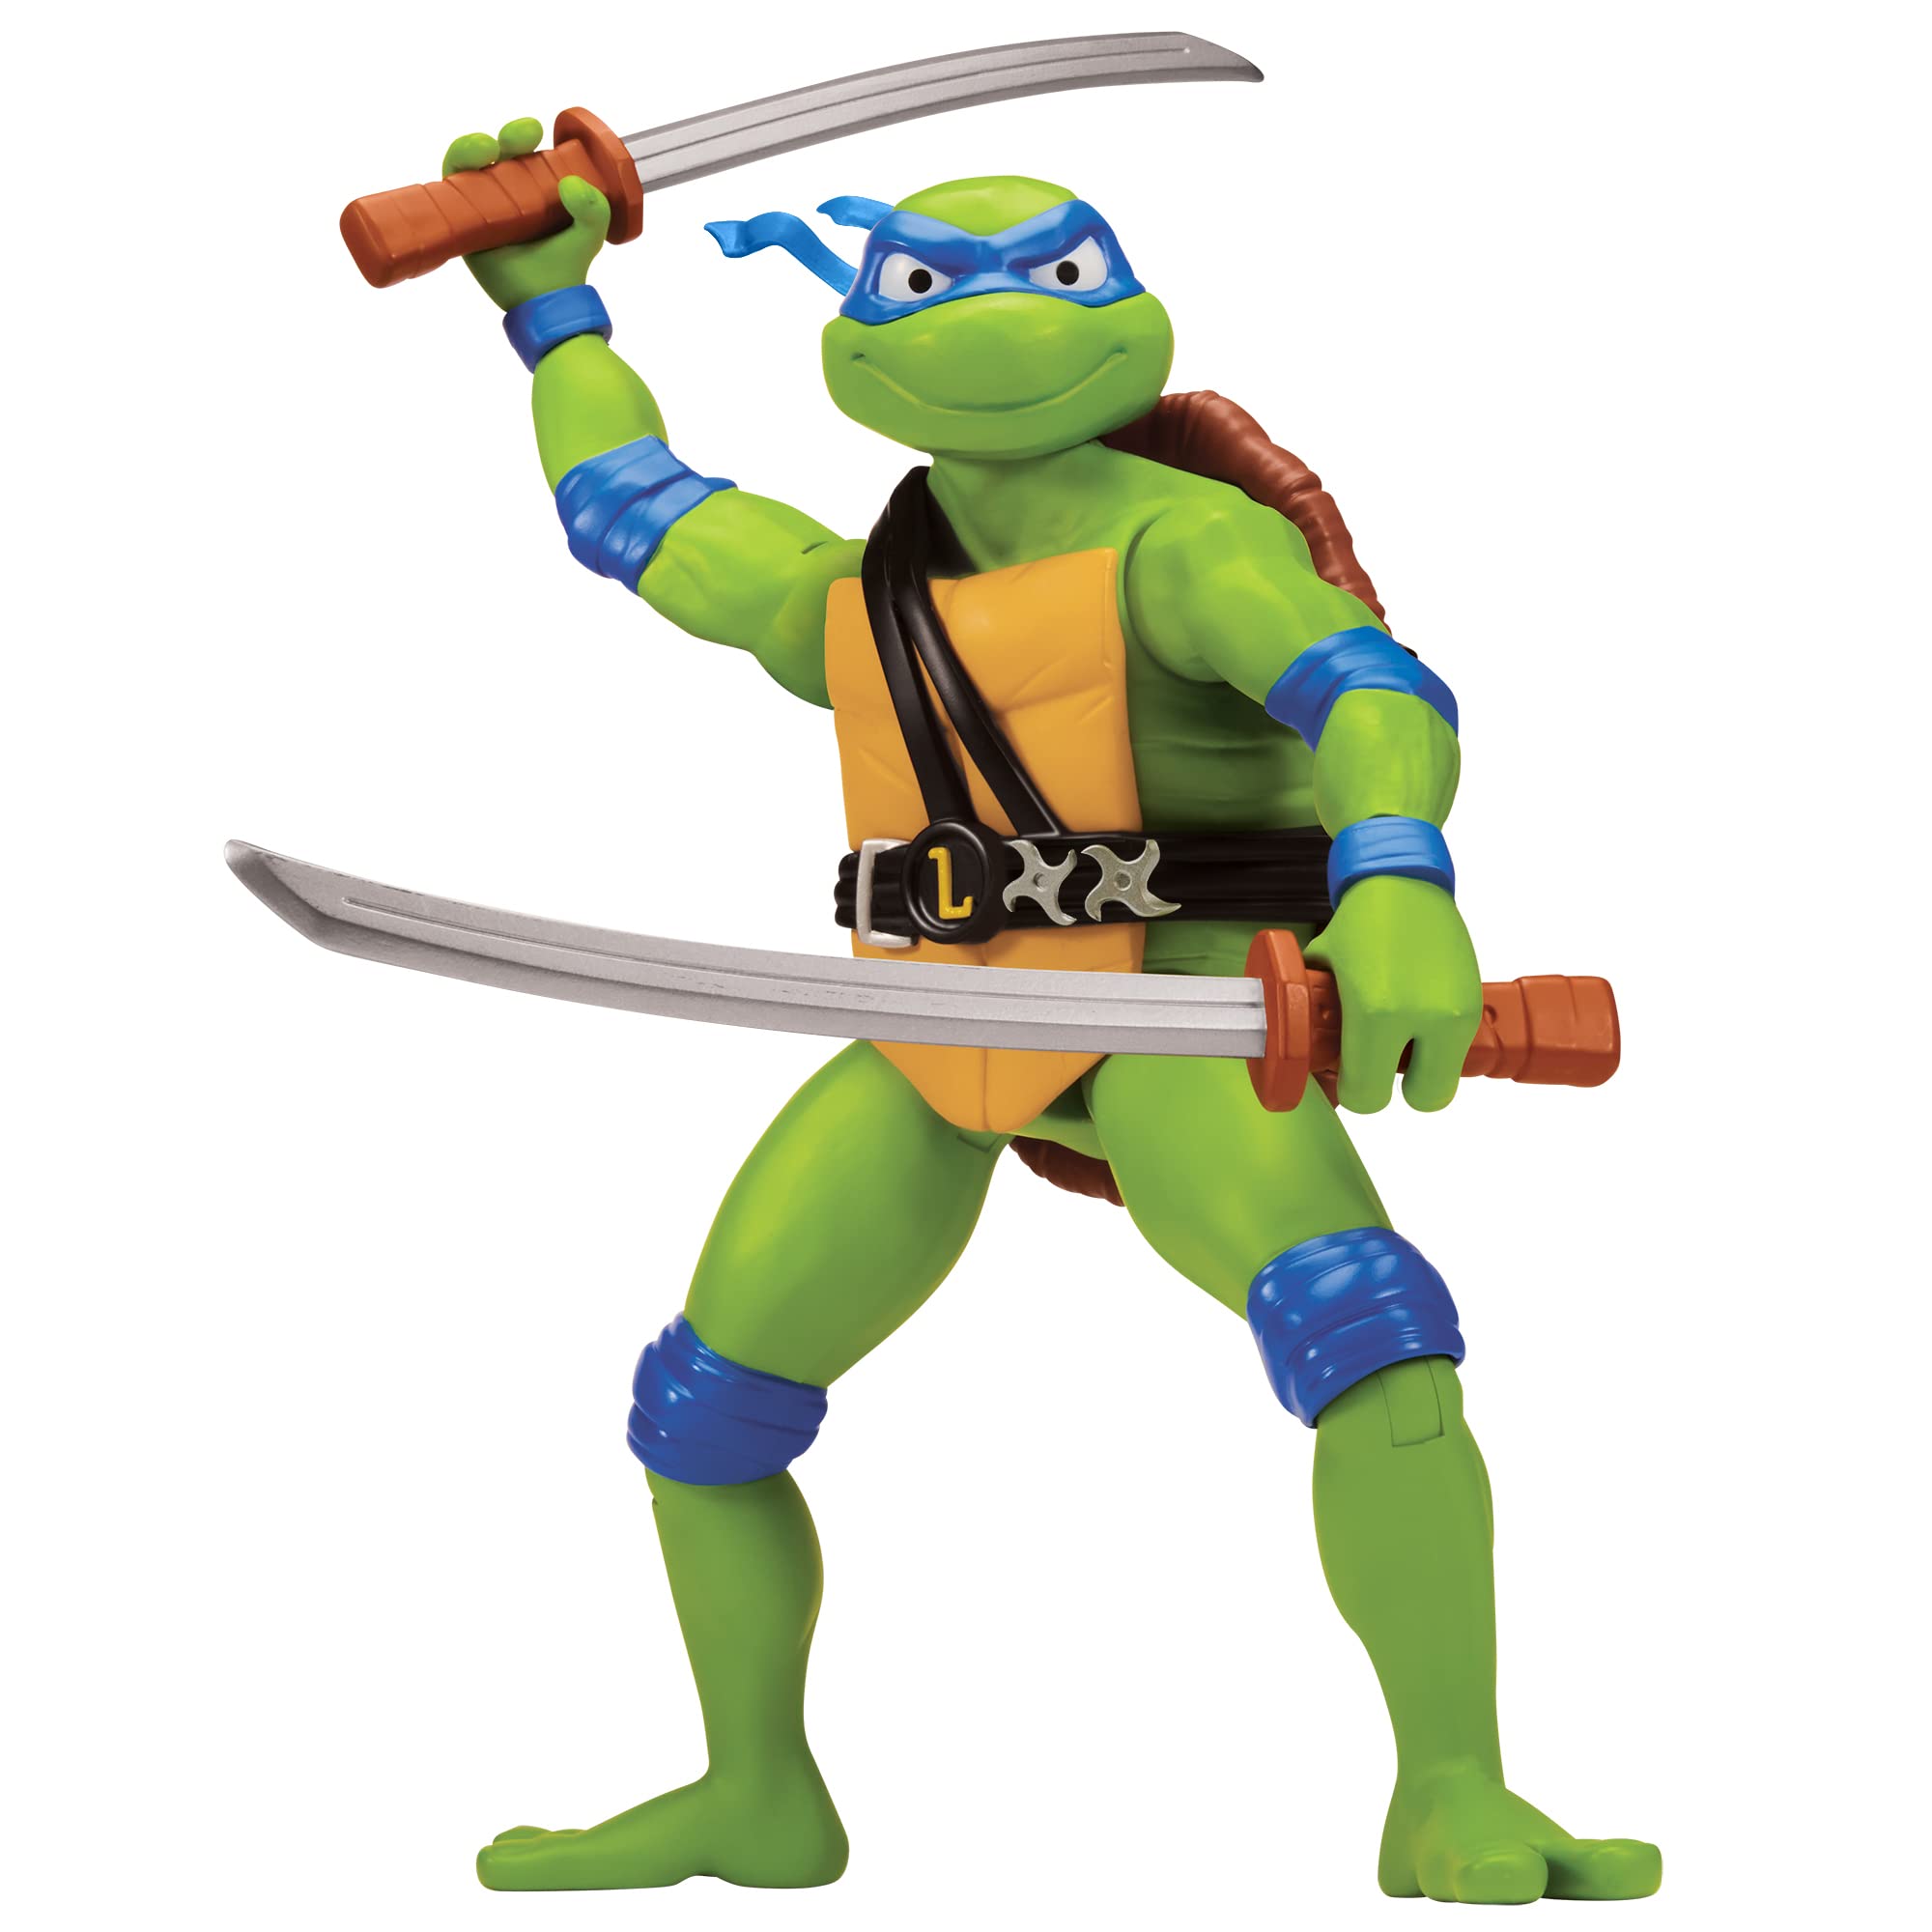 12” Teenage Mutant Ninja Turtles: Mutant Mayhem Figures: Leonardo $12.79 or Raphael $13.59 + Free Shipping w/ Prime or on $35+